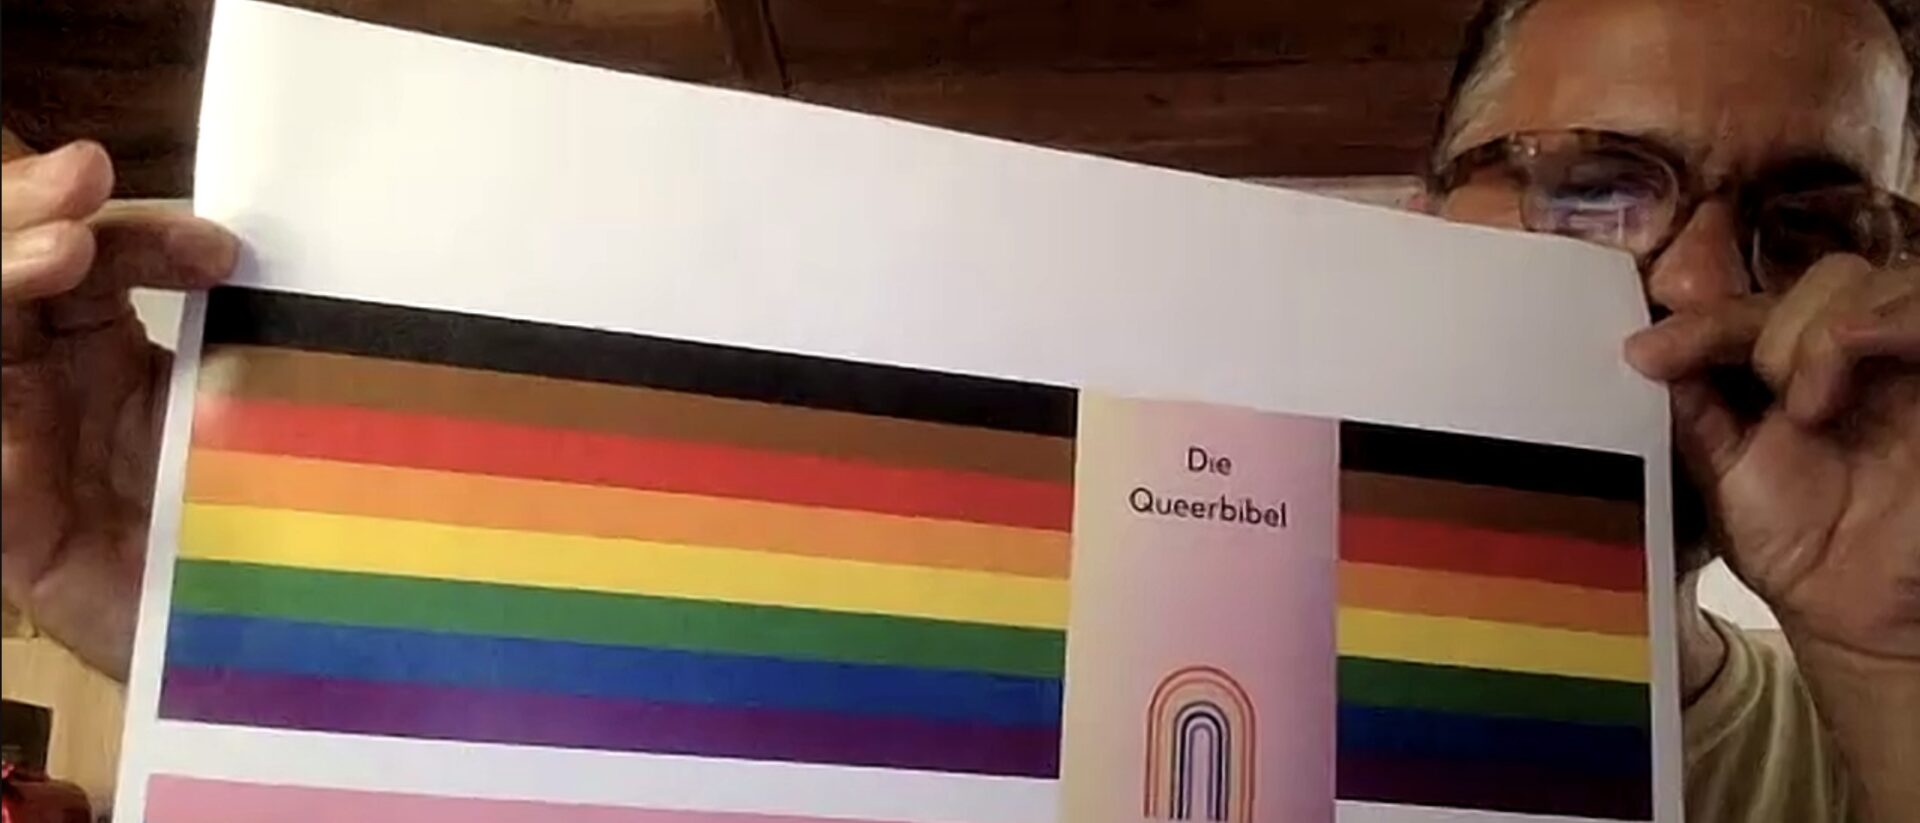 Meinrad Furrer hält den EInband der Queerbibel in die Kamera